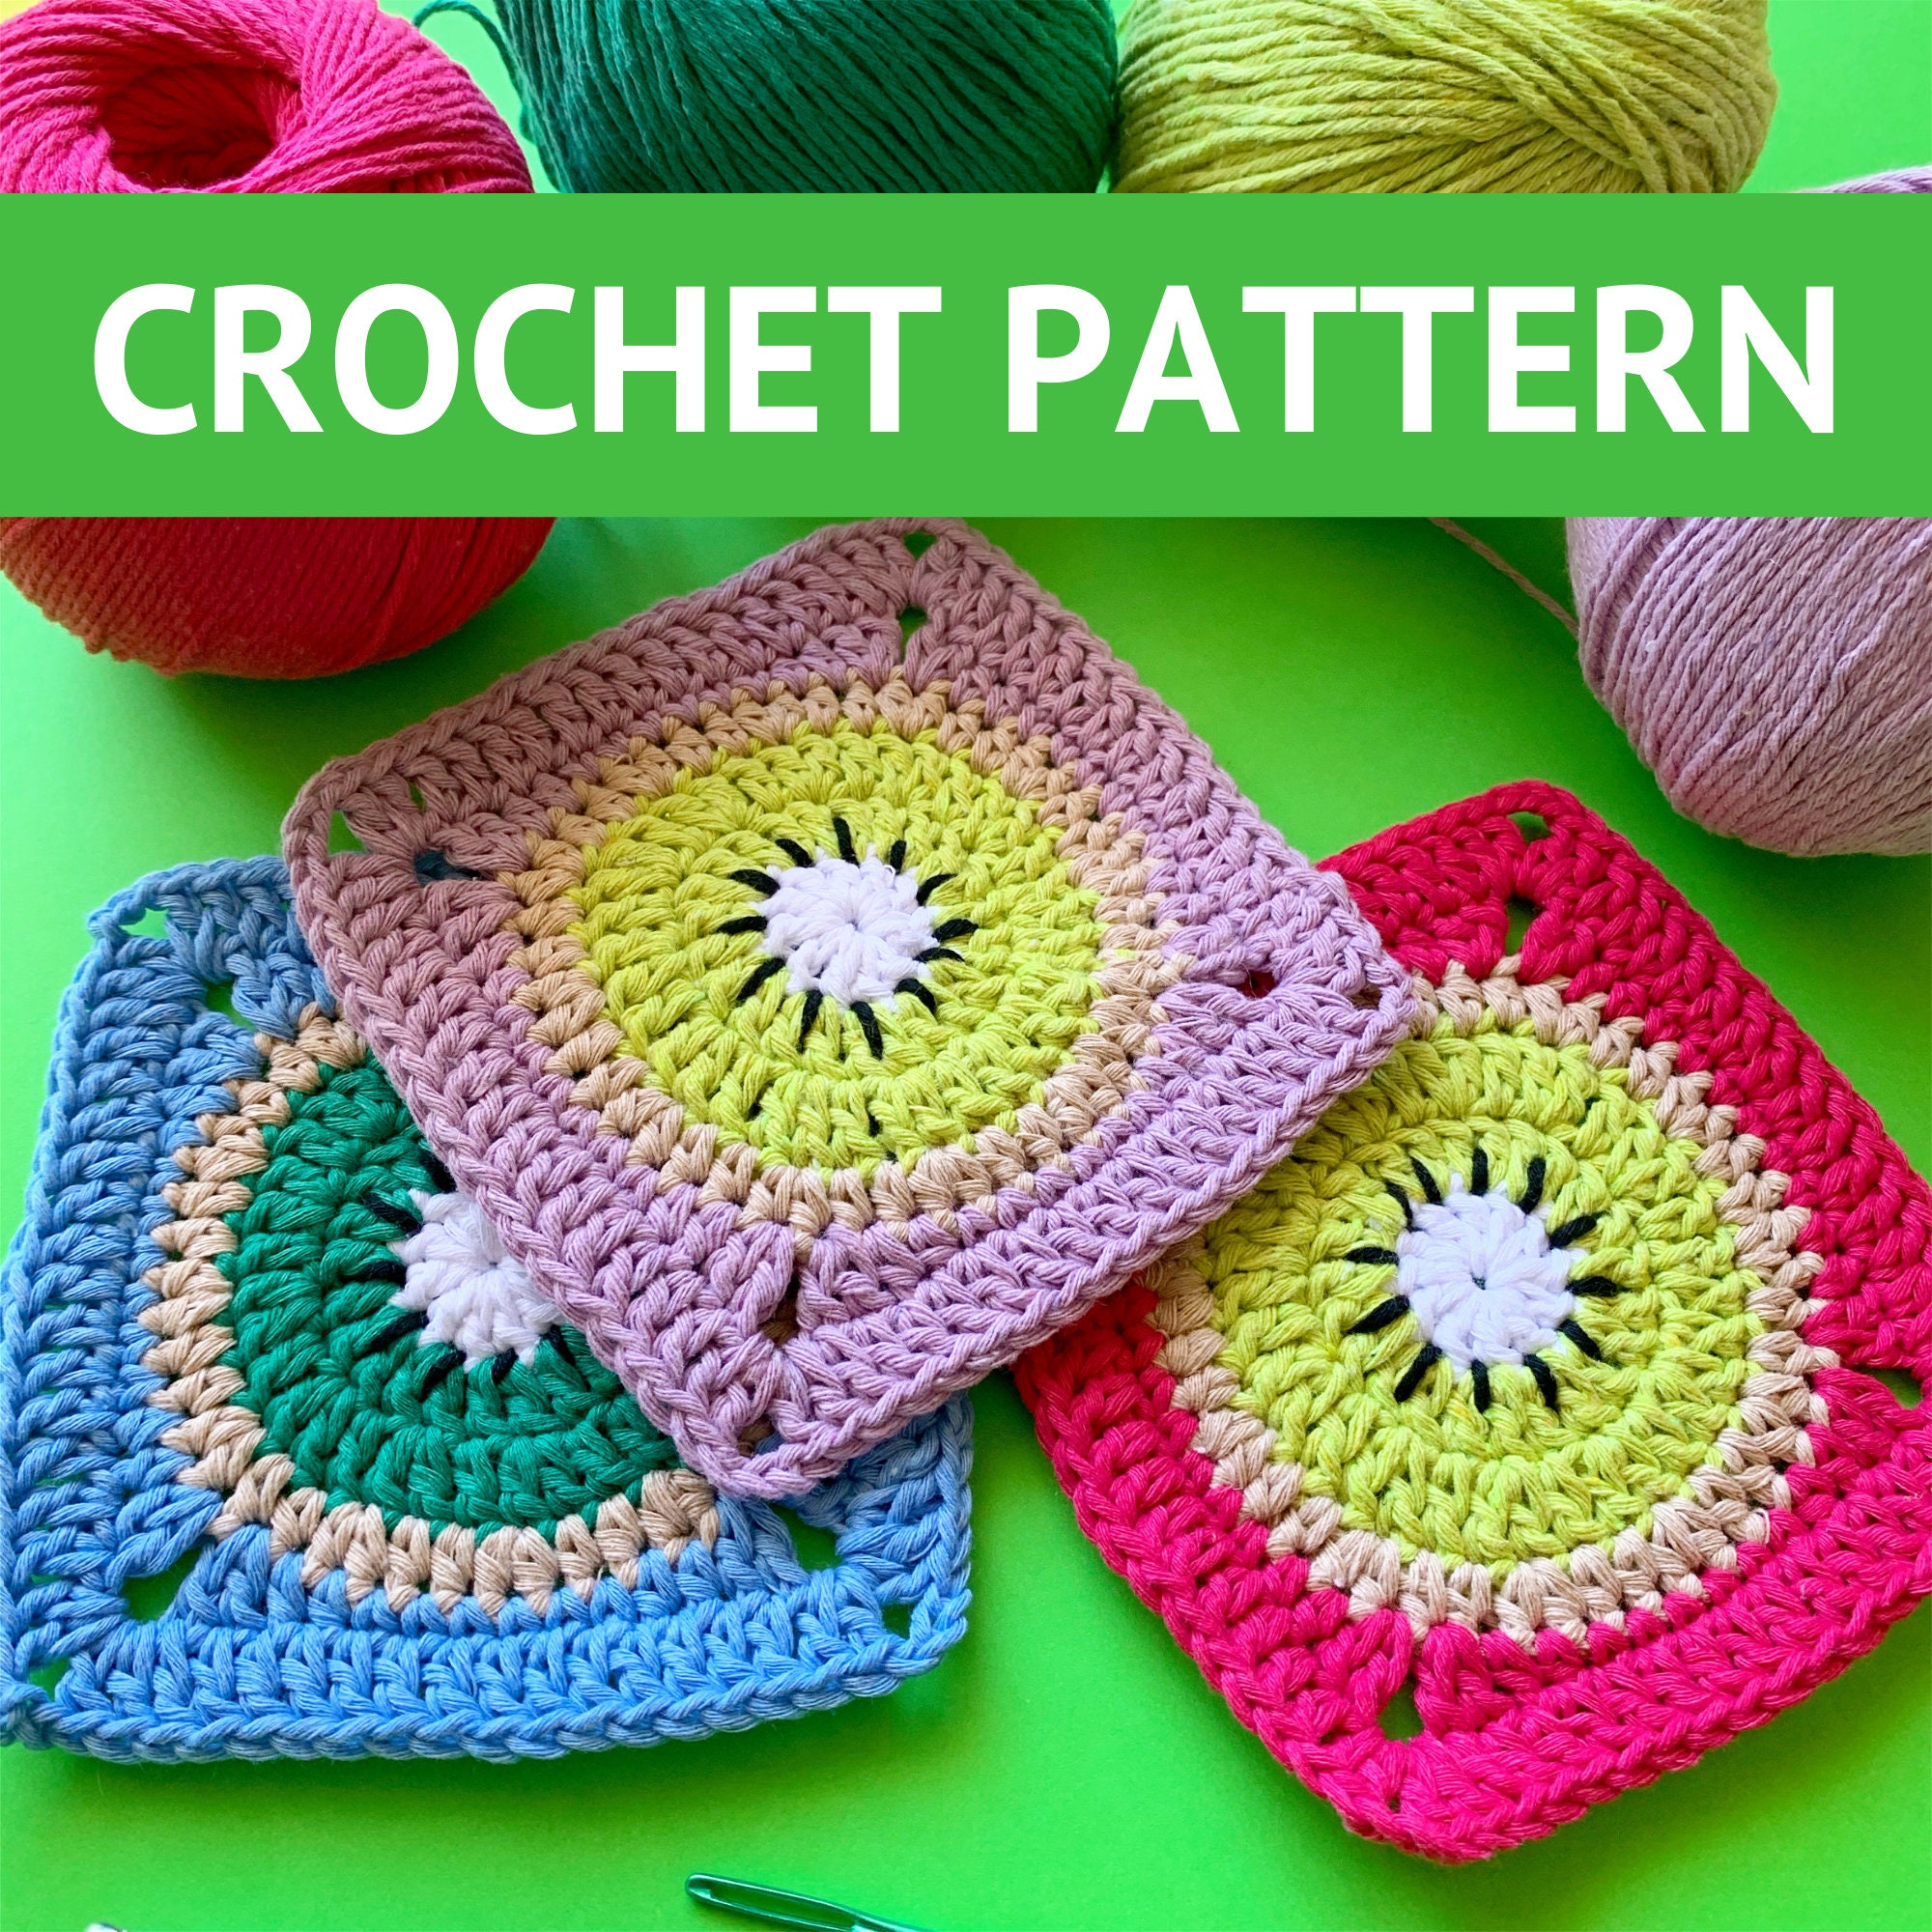 Kiwi Granny Squares Crochet Pattern / Crochet Granny Squares